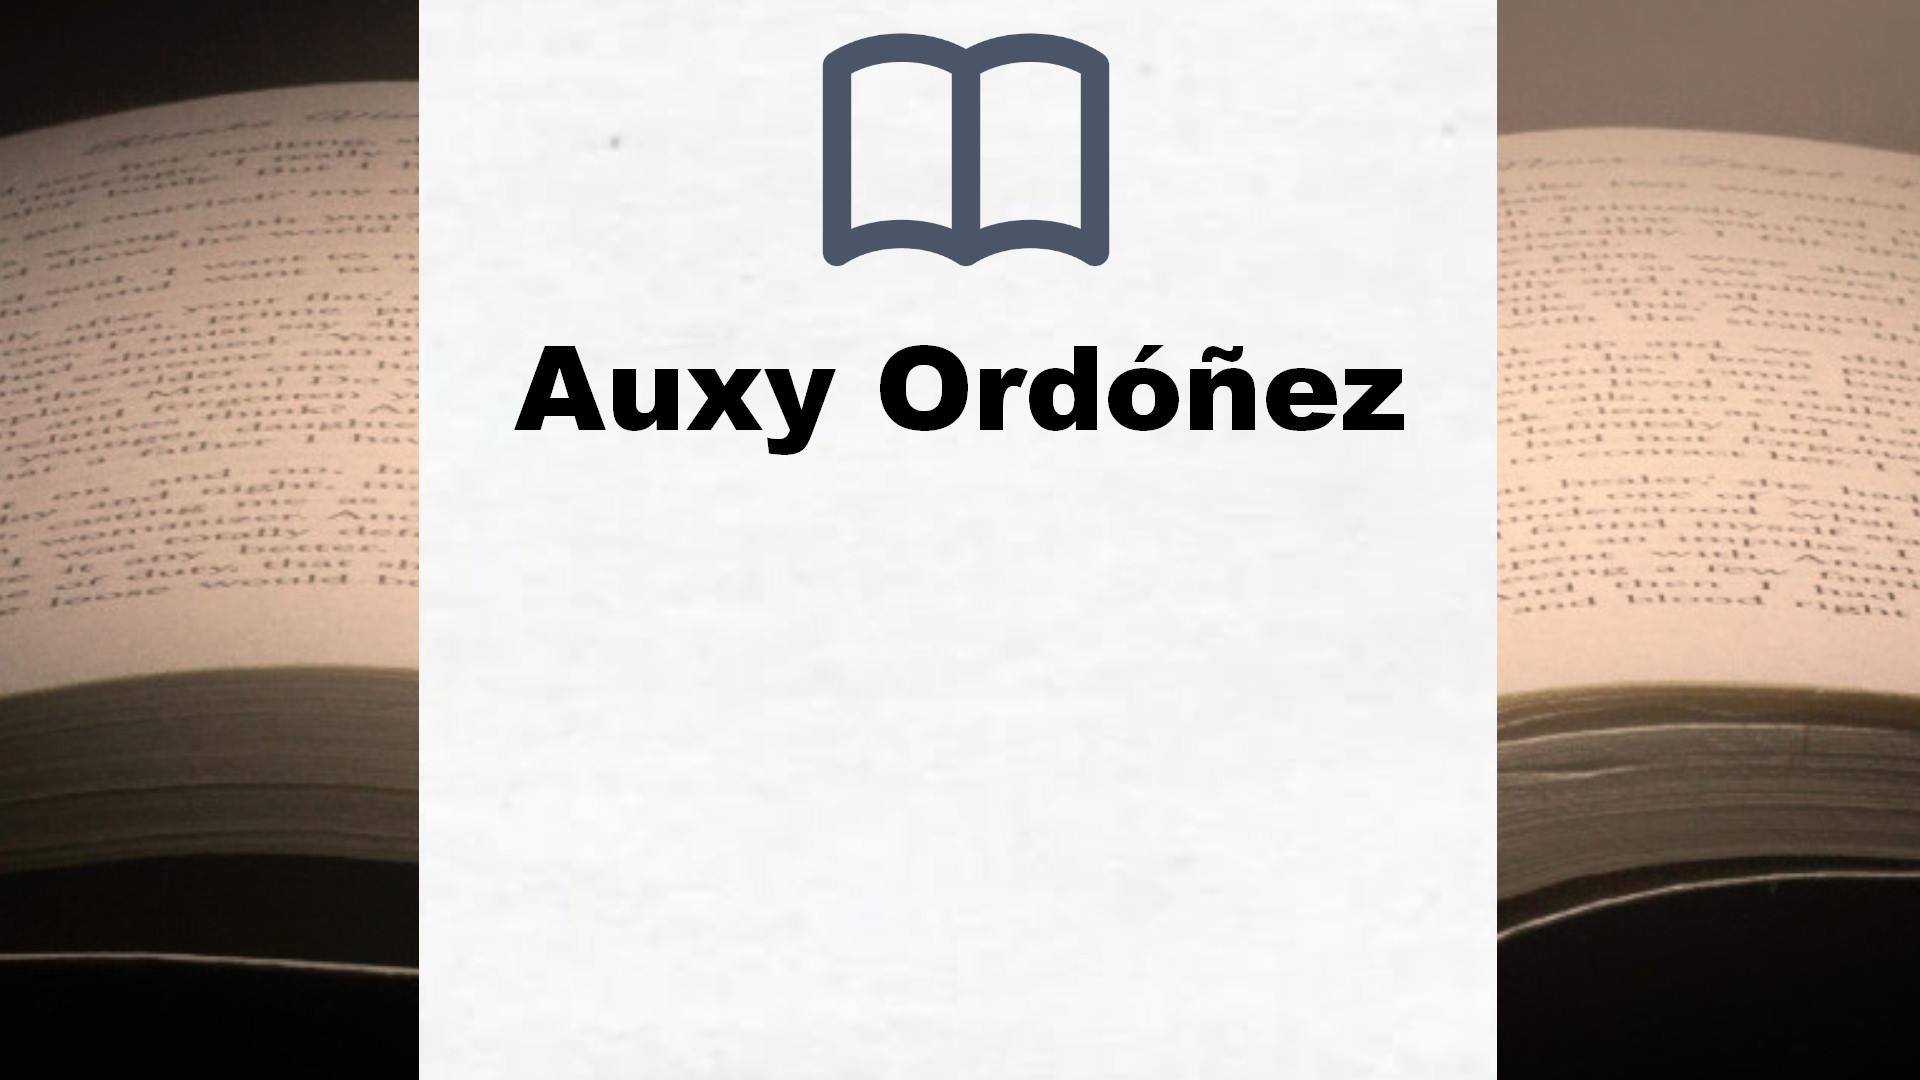 Libros Auxy Ordóñez